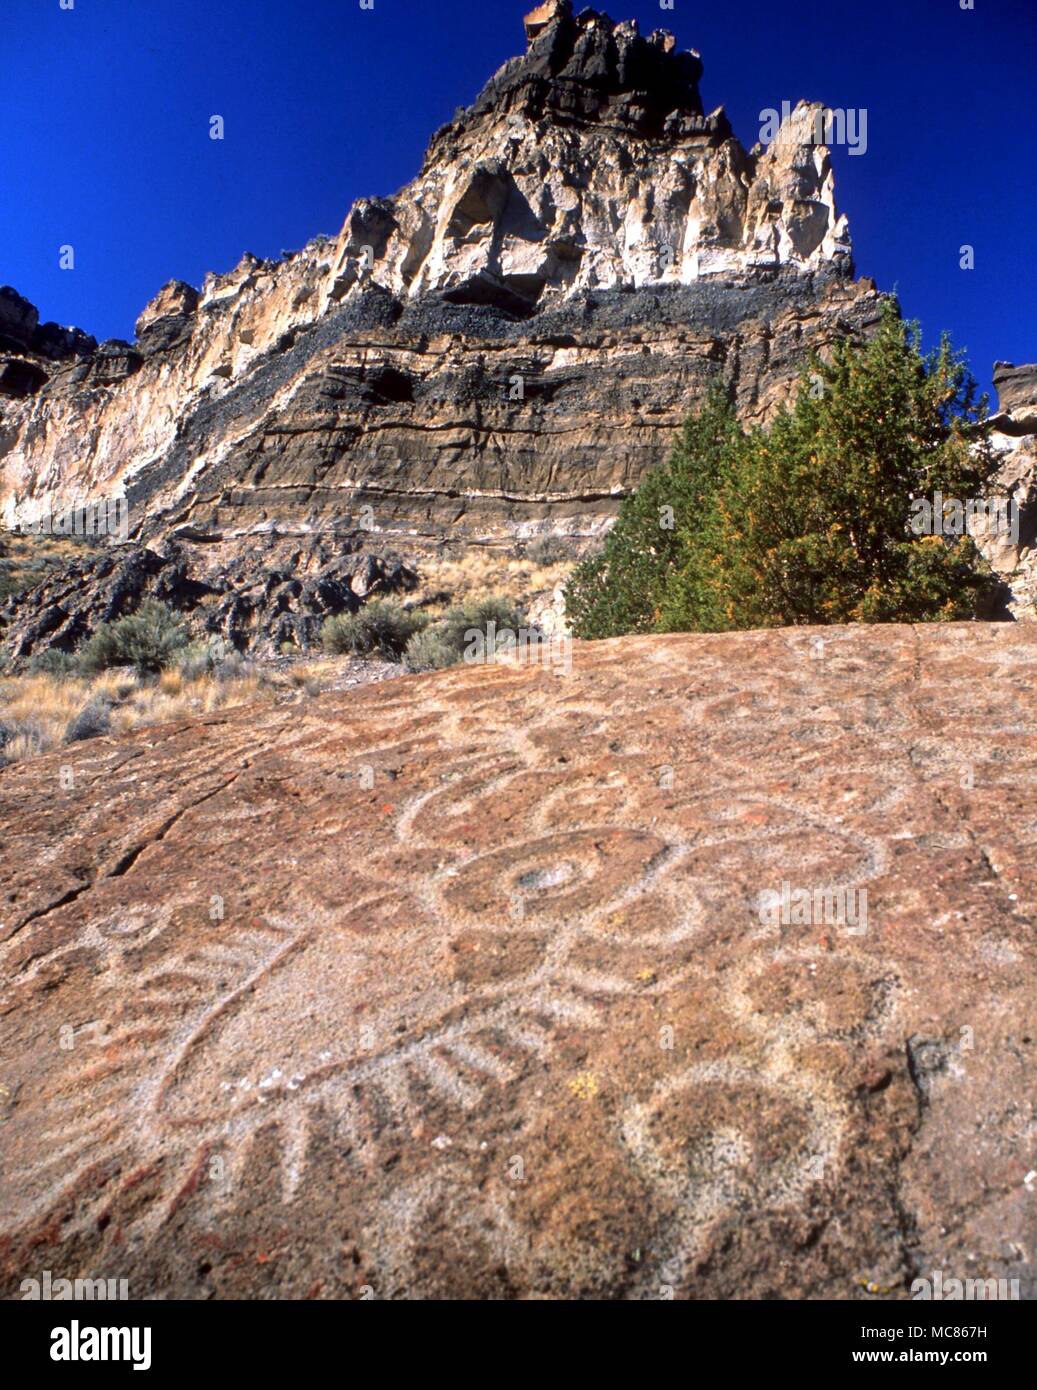 Indios NORTEAMERICANOS indios norteamericanos petroglyph, consistente de un insecto-como criatura, tallado en una piedra en Crooked River, cerca de Culver, Oregón, EE.UU. Foto de stock